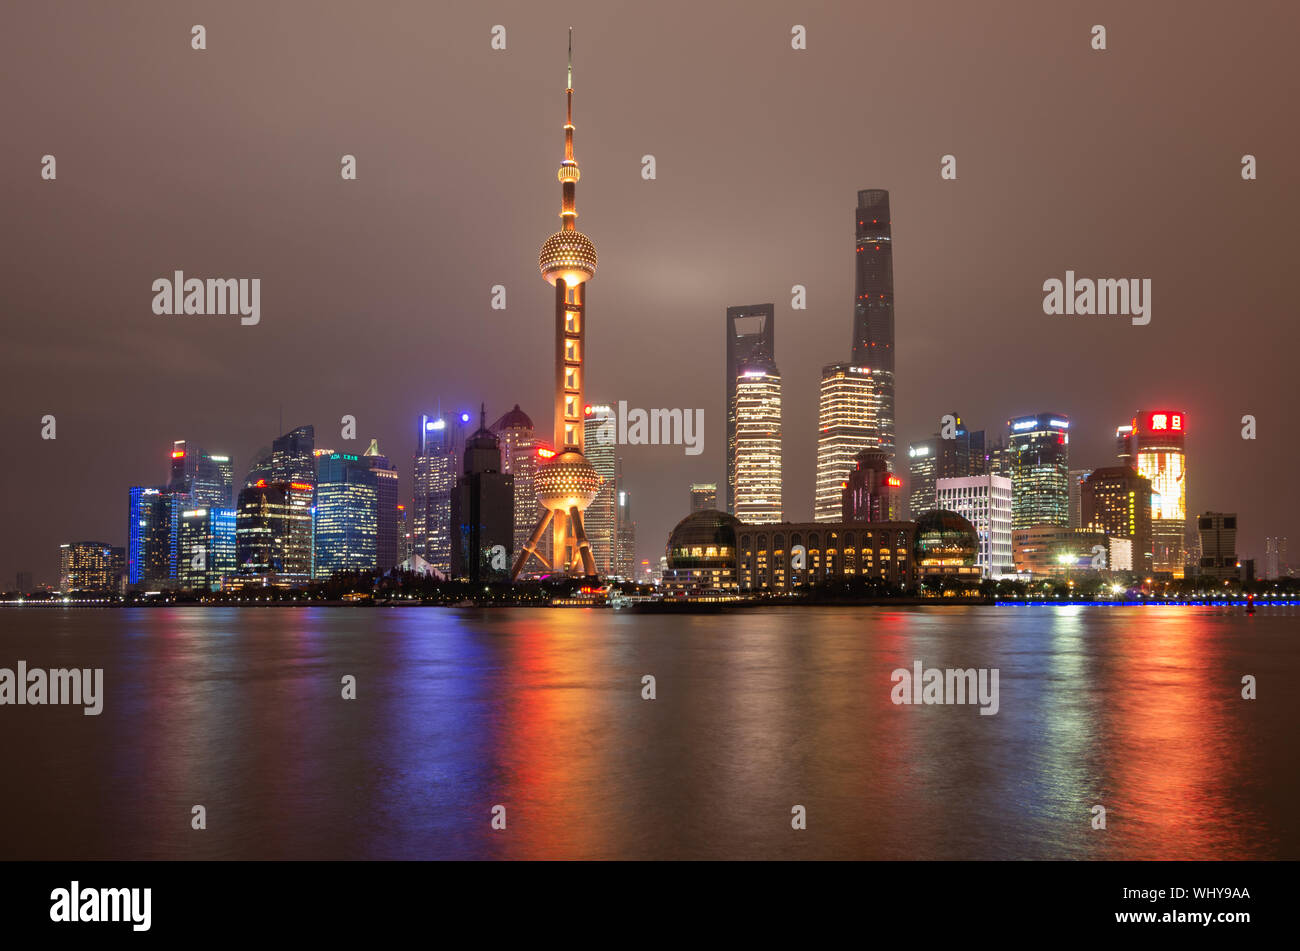 Skyline der Stadt Shanghai Pudong bei Nacht mit dem Oriental Pearl TV Tower und Lichtreflexionen des Huangpu Flusses, Shanghai, China Stockfoto